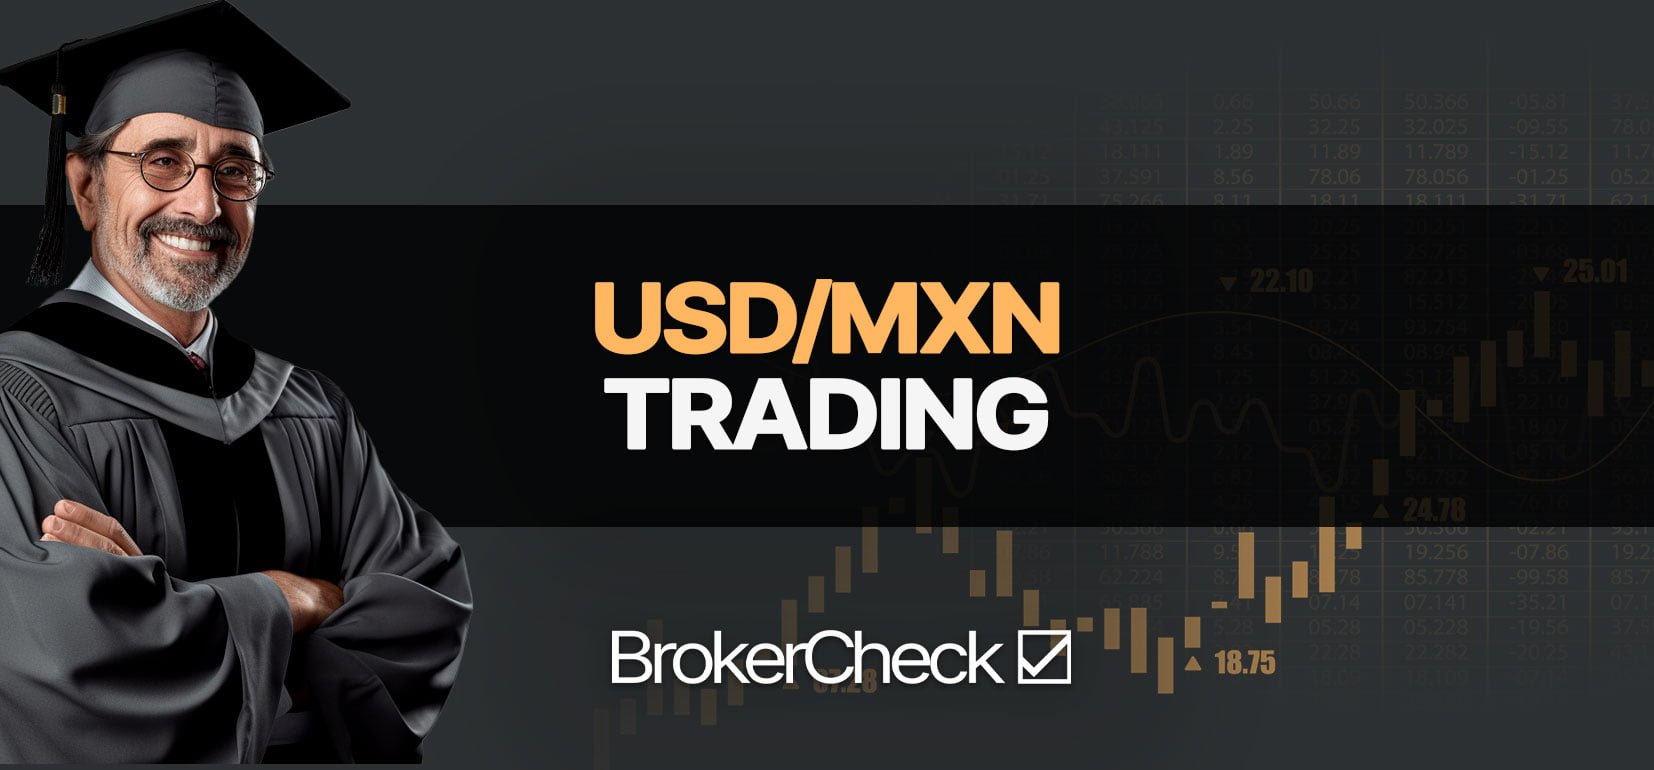 Como Hacer Trade USD/MXN con éxito